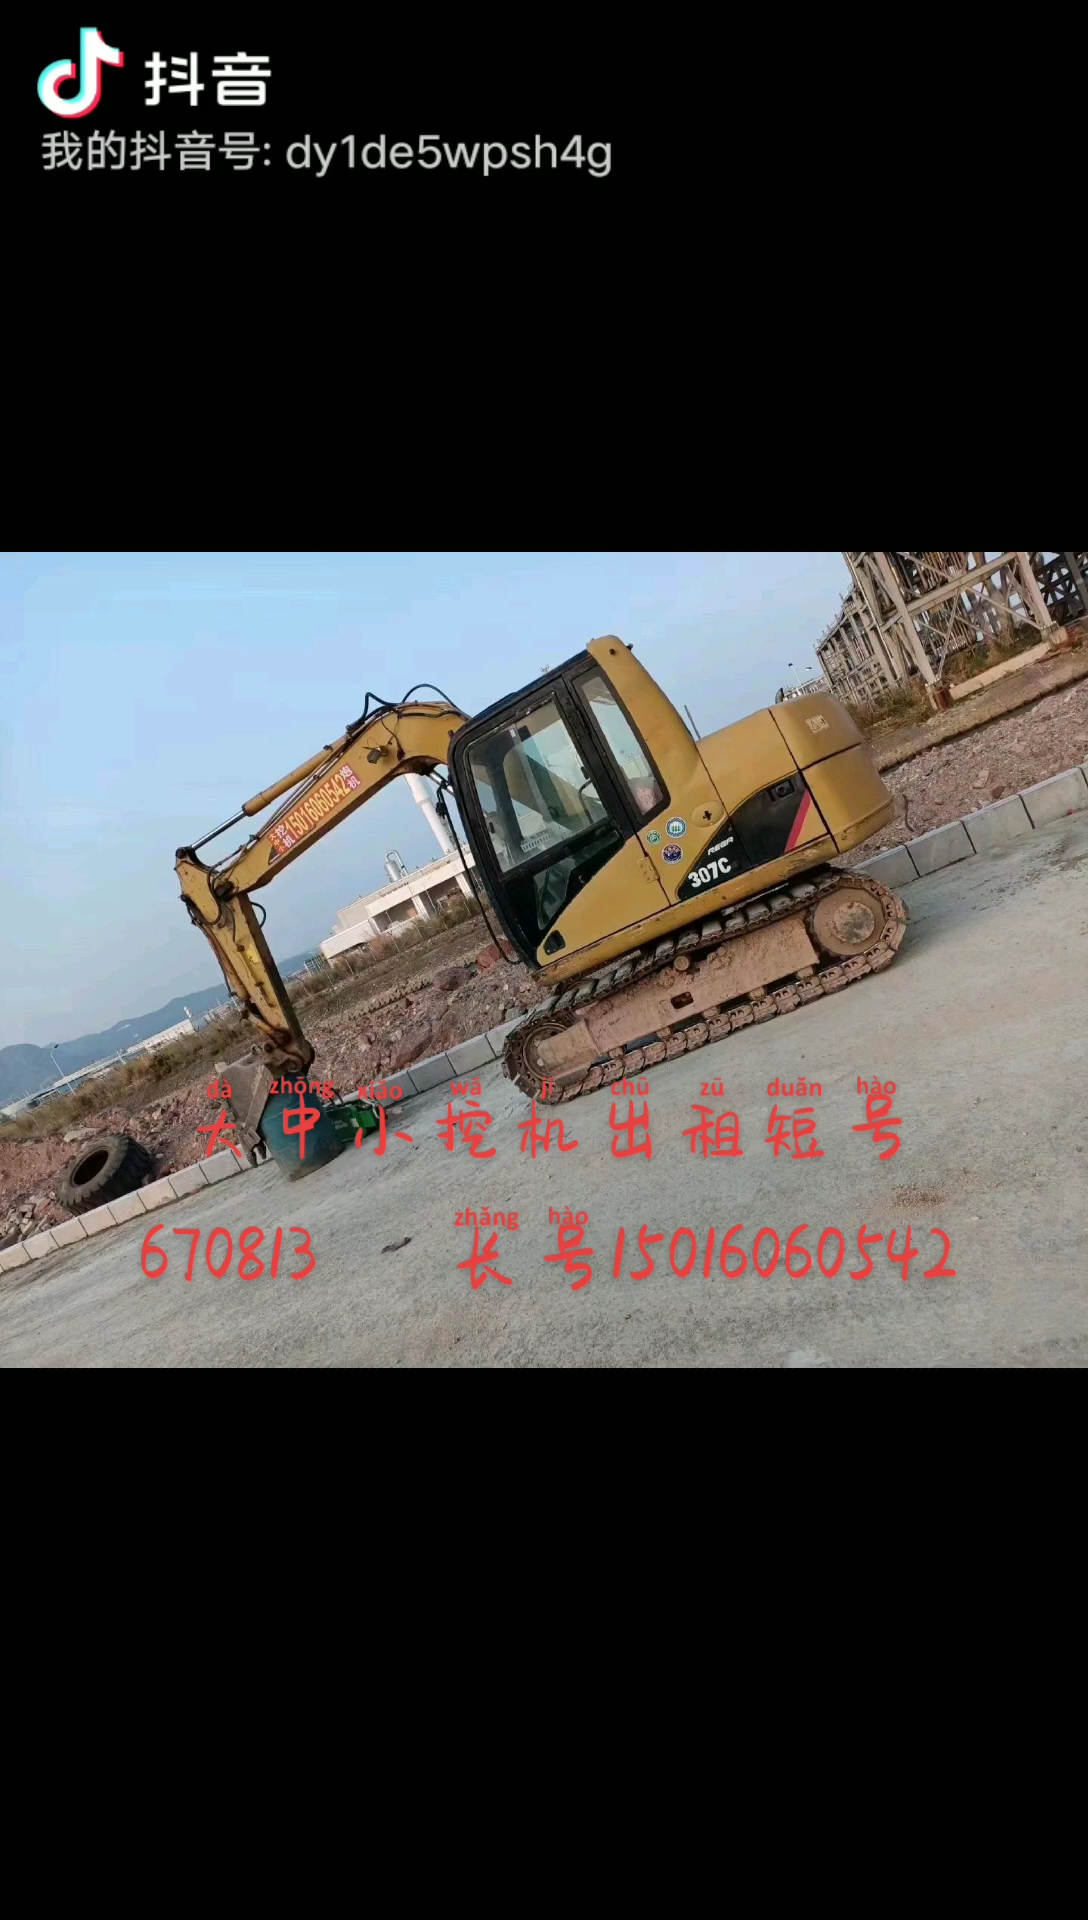 惠州市華鑫機械設備有限公司-帖子圖片